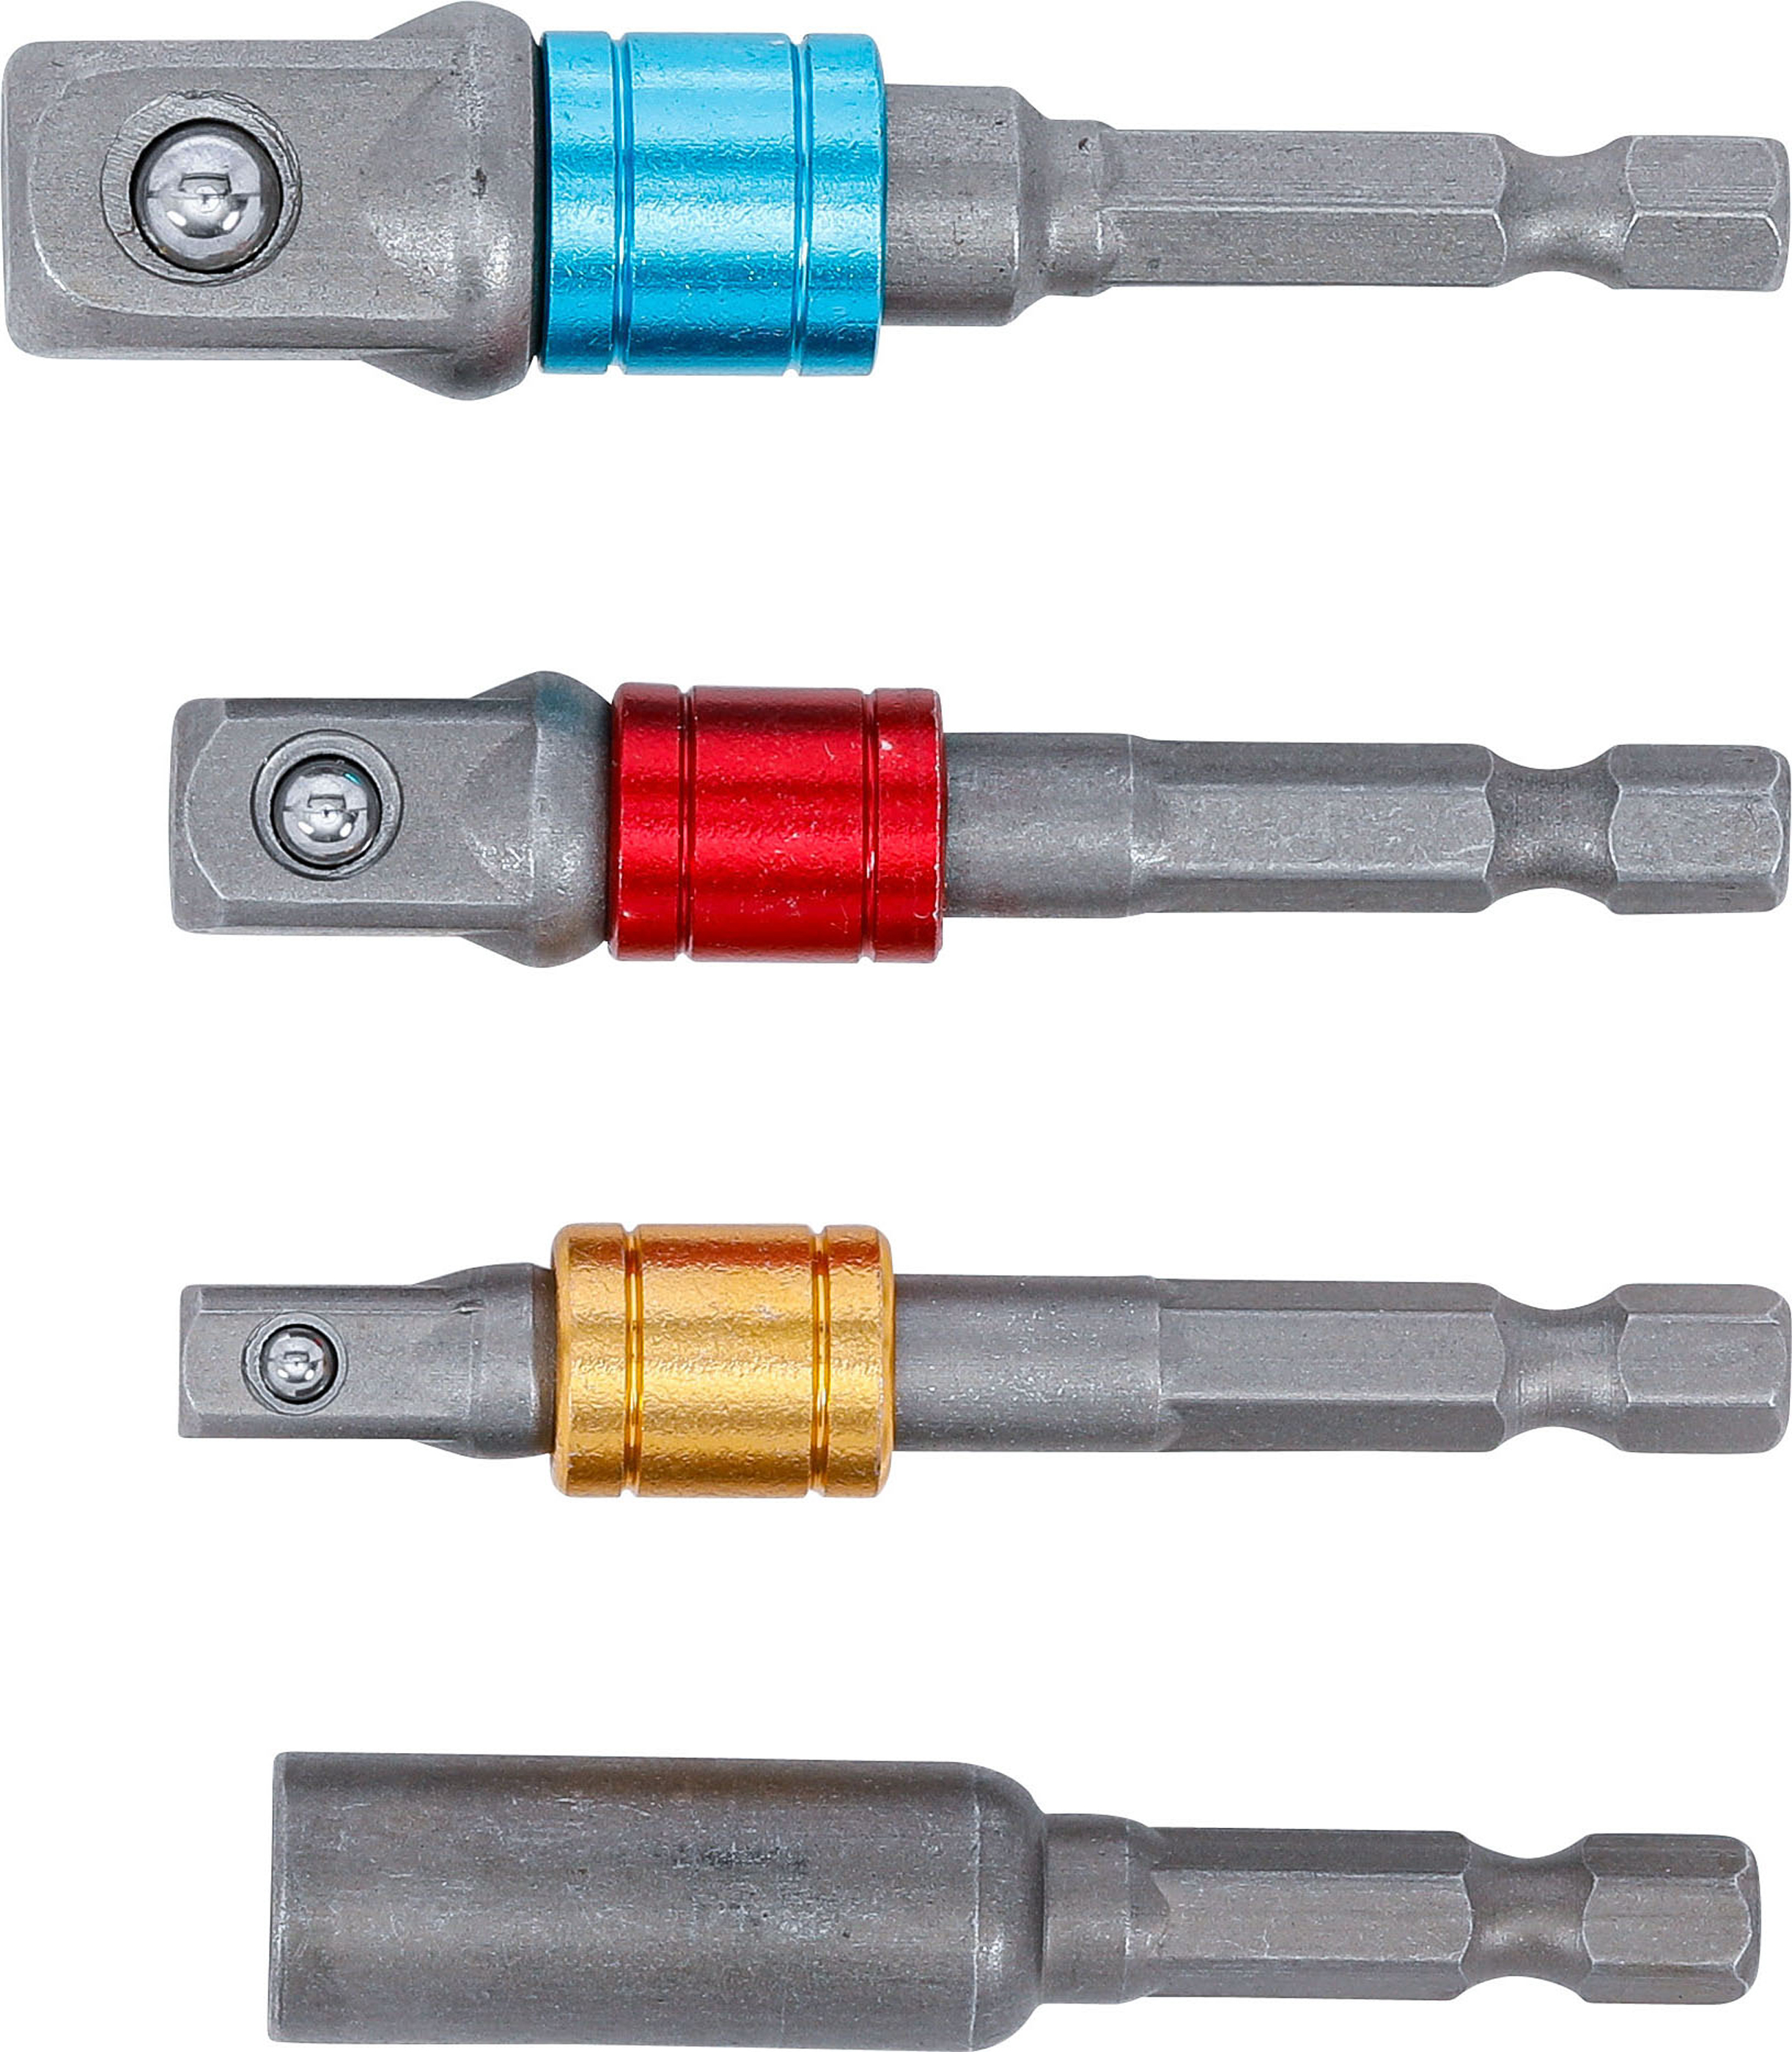 BGS Adapter-Satz für Bohrmaschinen | farbig | Antrieb Außensechskant 6,3 mm (1/4") | Abtrieb Außenvierkant 6,3 mm (1/4"), 10 mm (3/8"), 12,5 mm (1/2"), Innensechskant 6,3 mm (1/4") | 4-tlg.